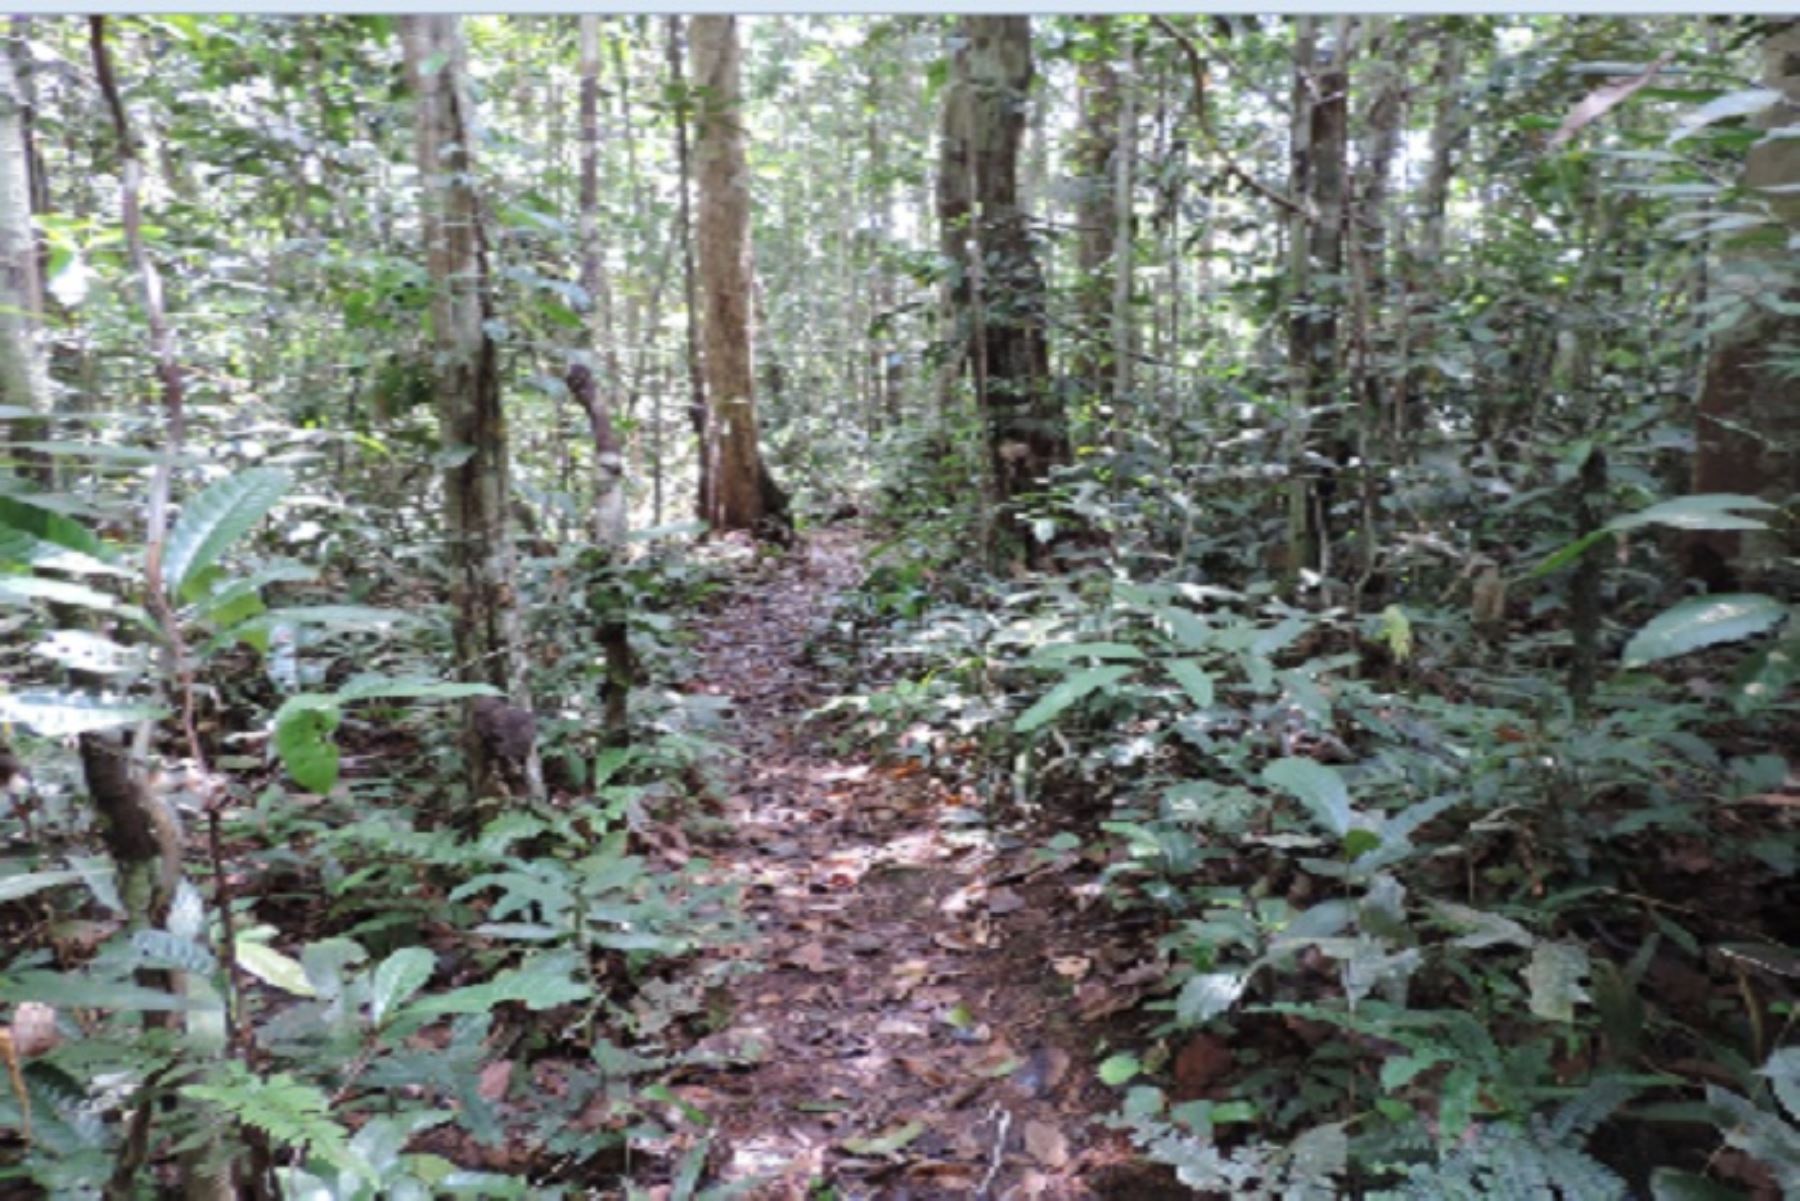 El predio “Buen Retiro”, ubicado en el distrito de Nauta, busca conservar una muestra de bosque húmedo tropical y así contribuir a mantener el refugio de especies silvestres y las quebradas presentes en el área.